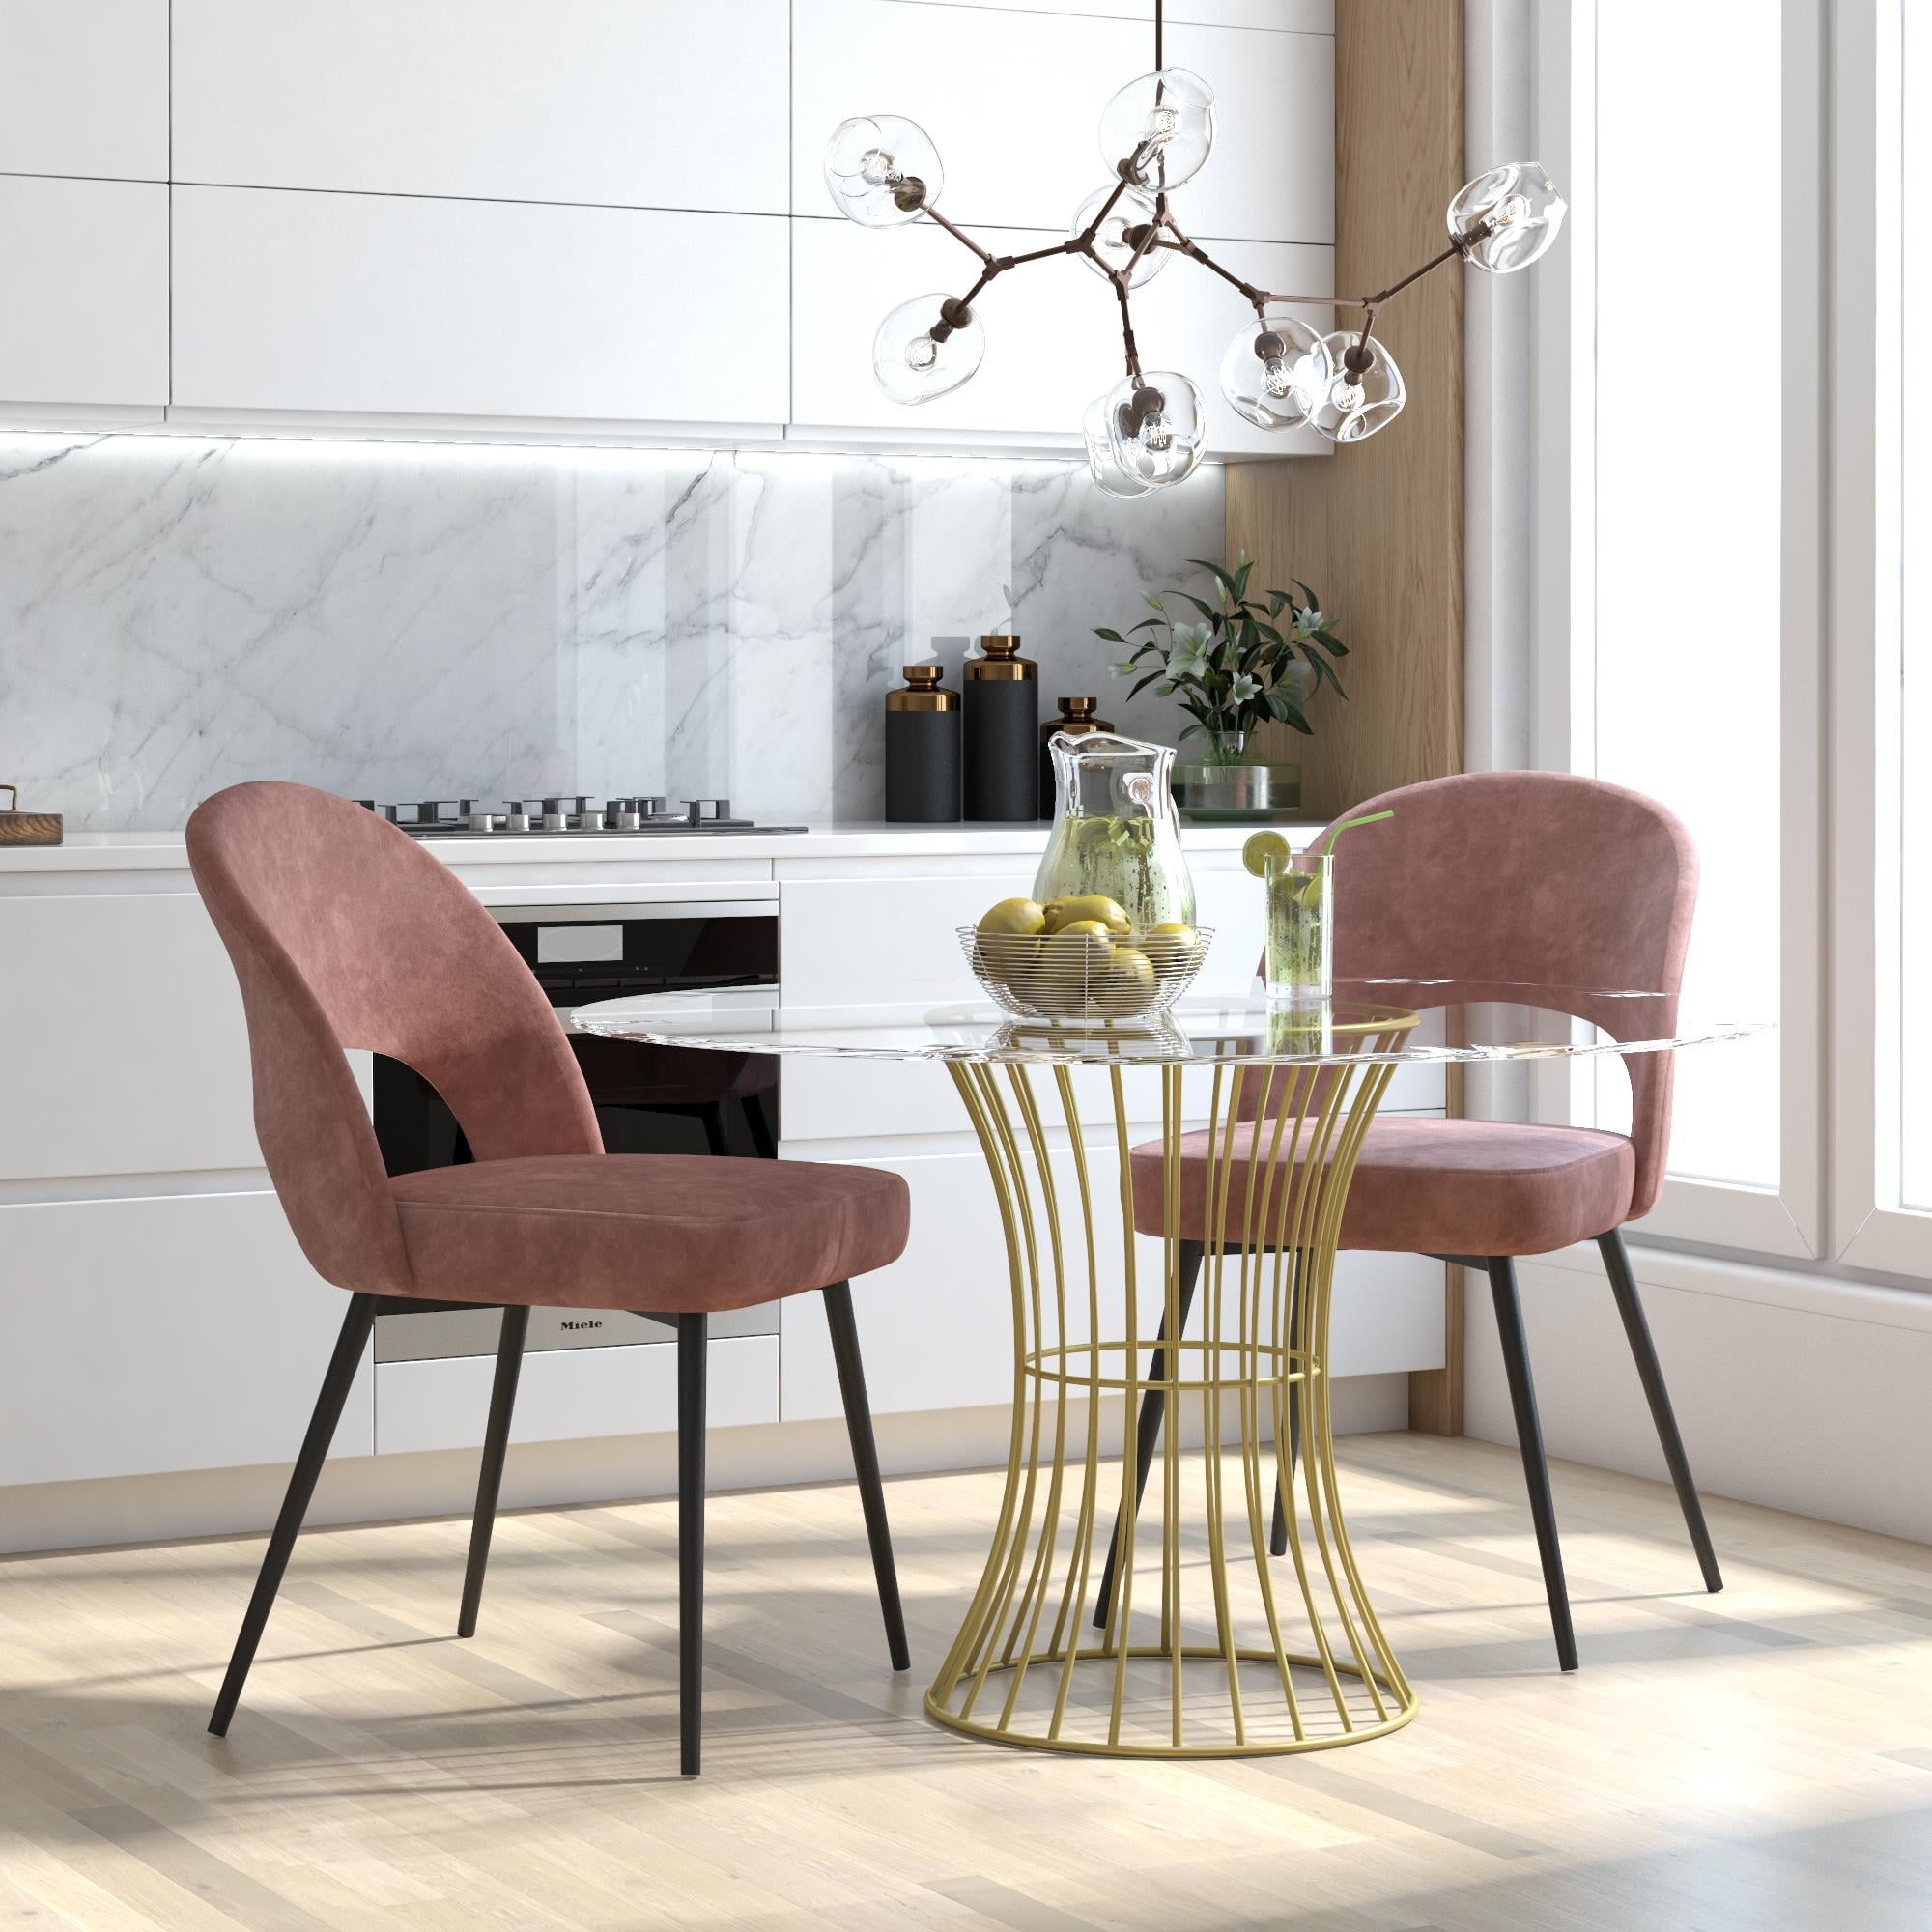 CosmoLiving Alexi Upholstered Dining Chair, Dark Blush Pink Velvet